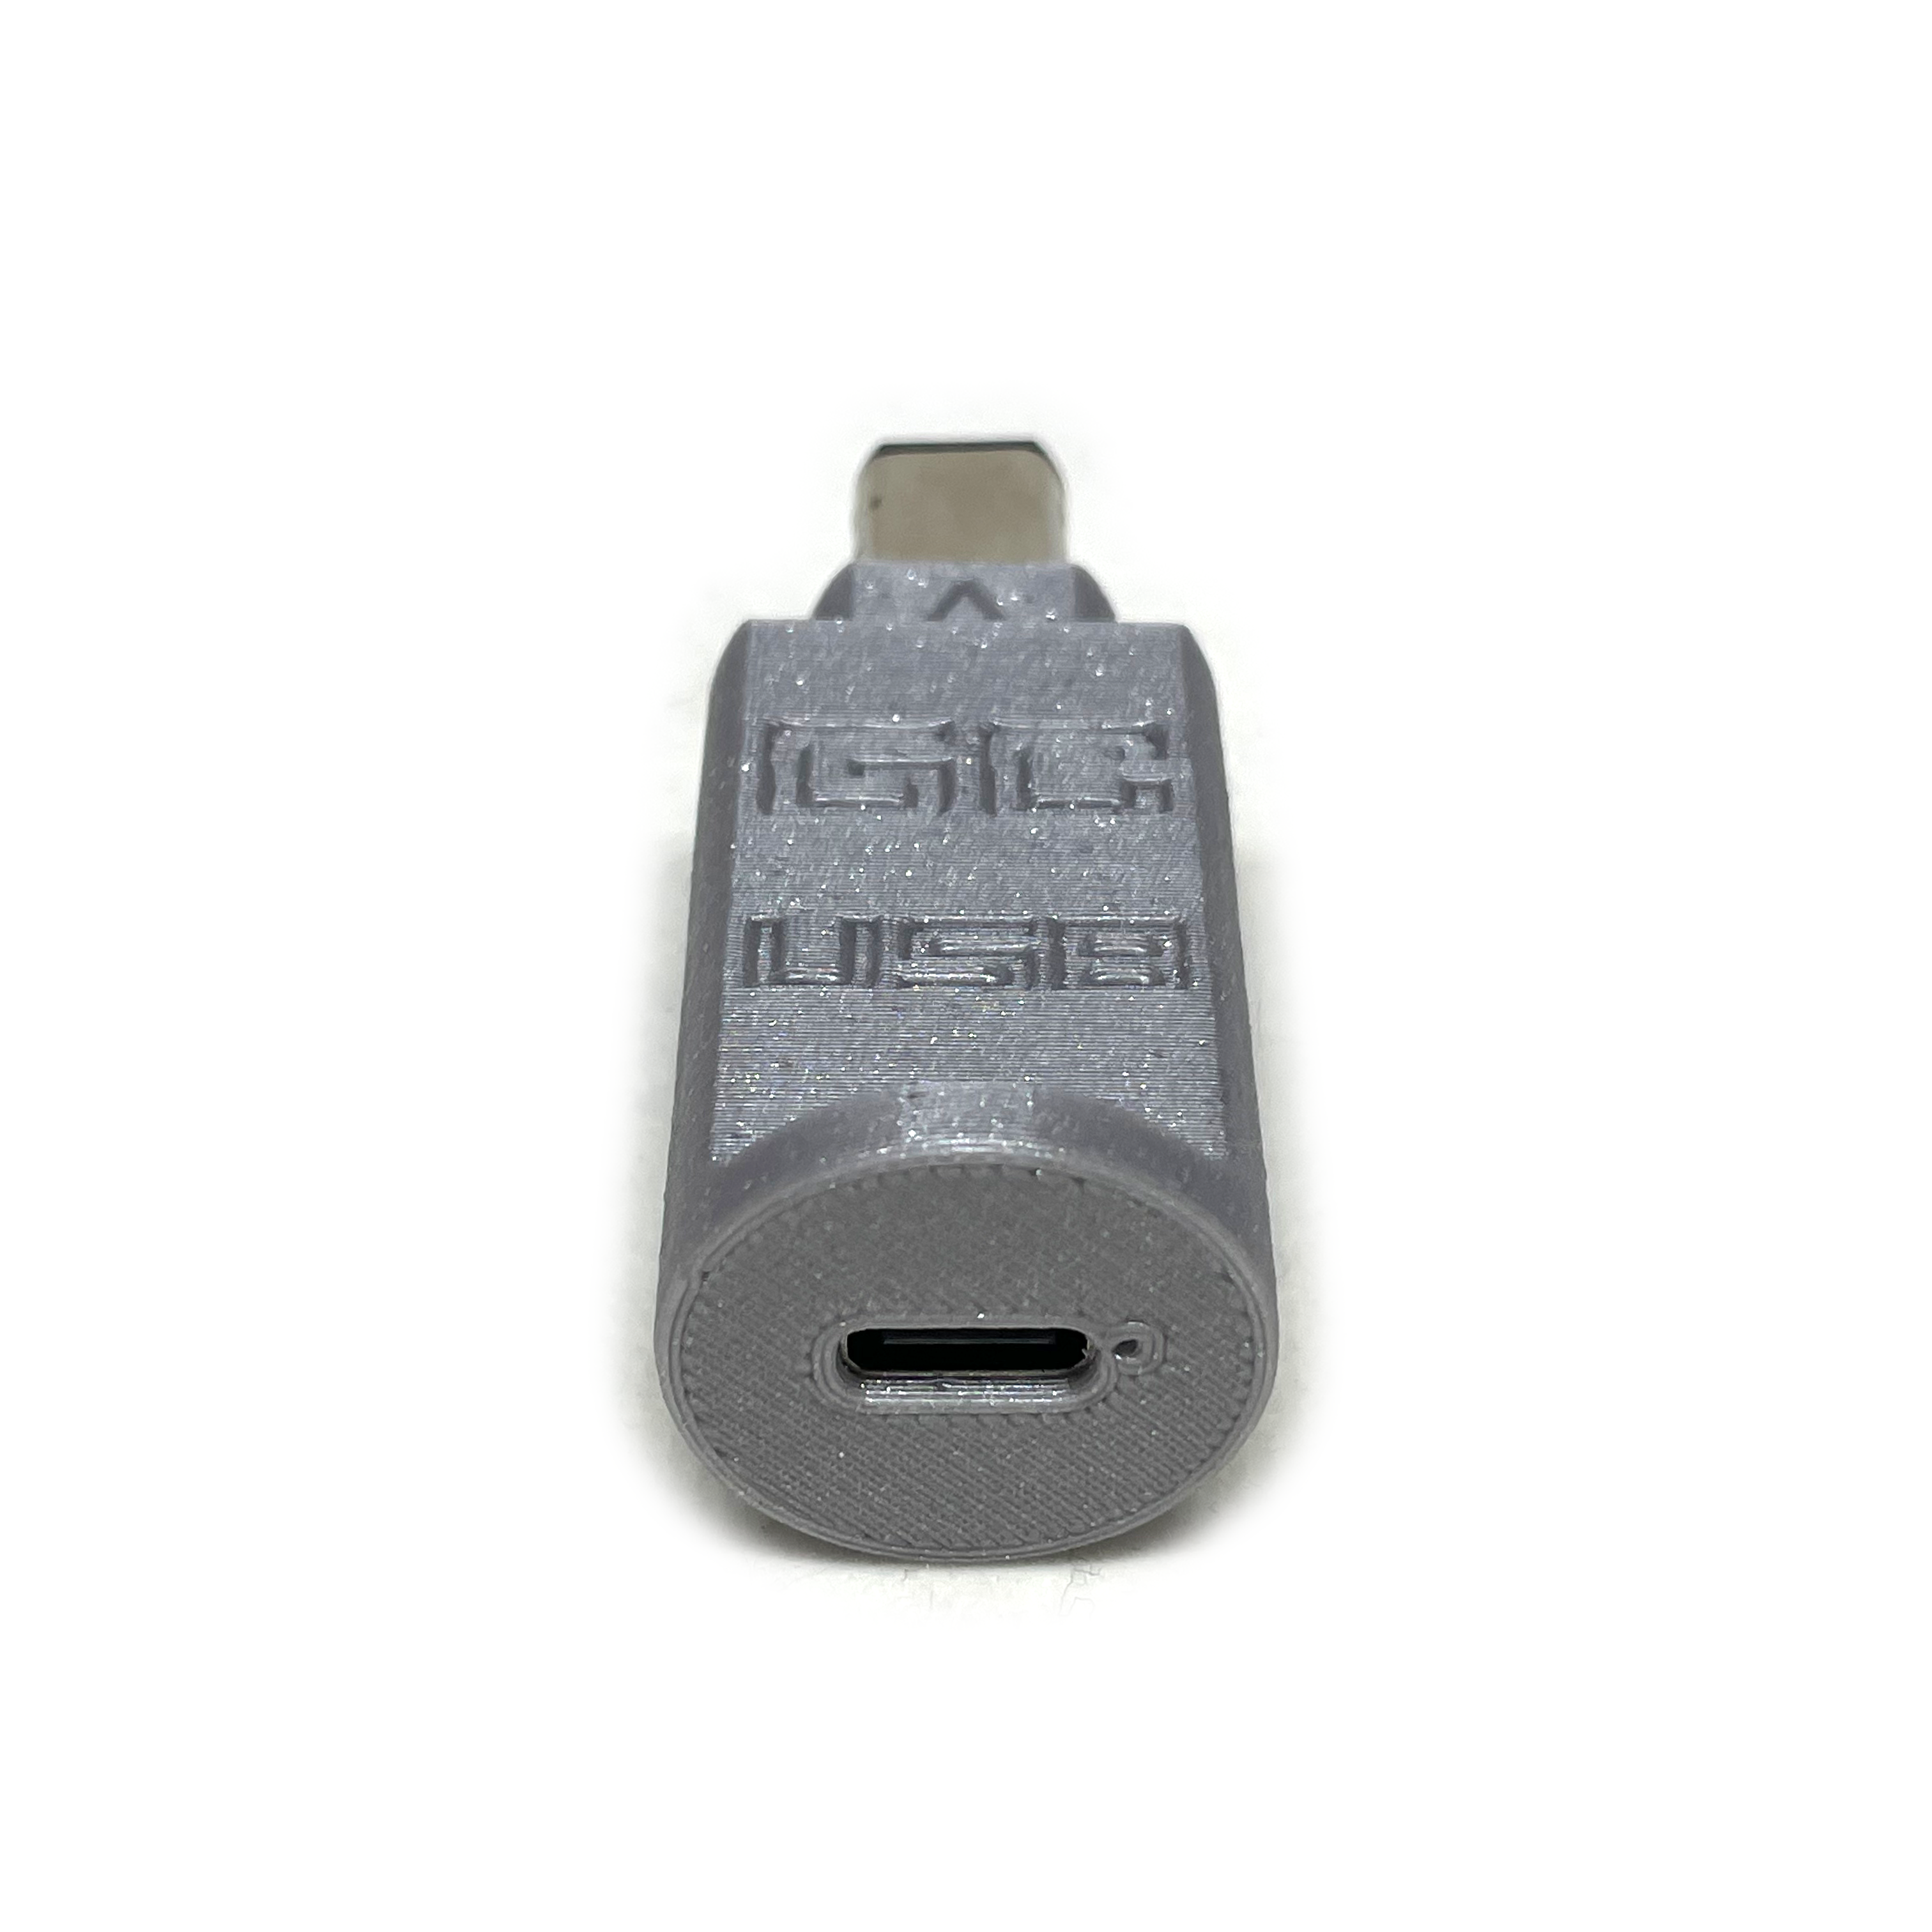 Adaptador de joystick de Gamecube a USB